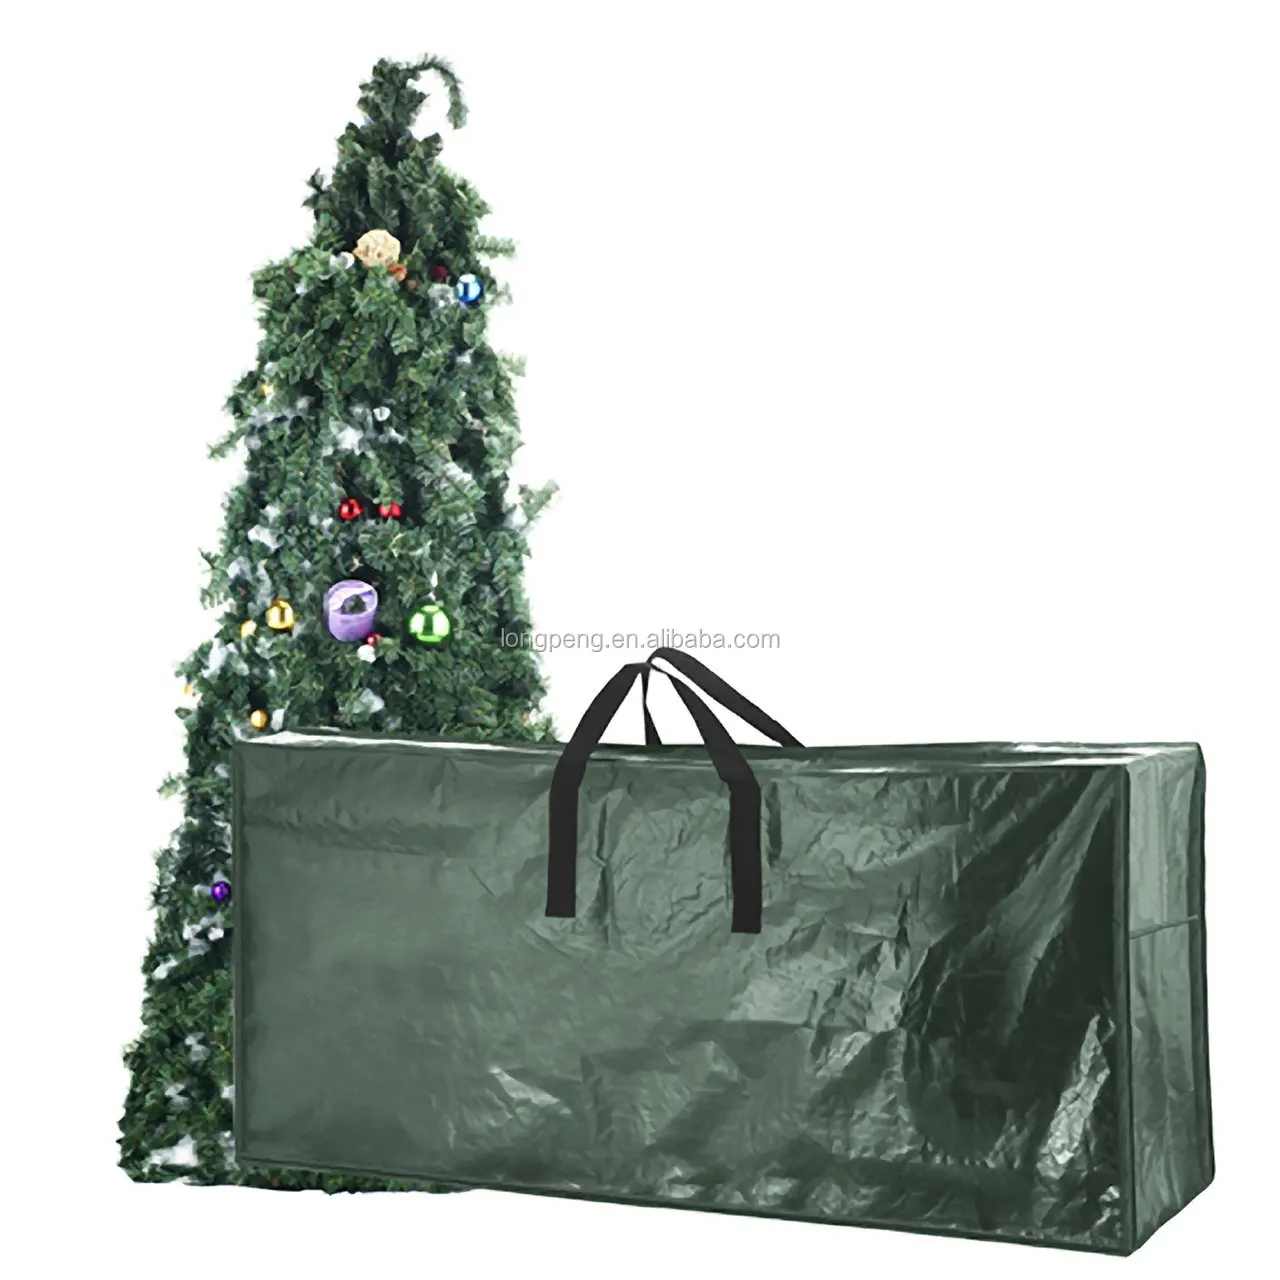 堆肥化可能なクリスマスツリー廃棄バッグクリスマスツリー収納バッグホリデーダークグリーン特大9フィートツリー用 Buy 堆肥化可能なクリスマスツリー 処分バッグ 安いホリデーギフトバッグ クリスマスリース収納バッグ Product On Alibaba Com